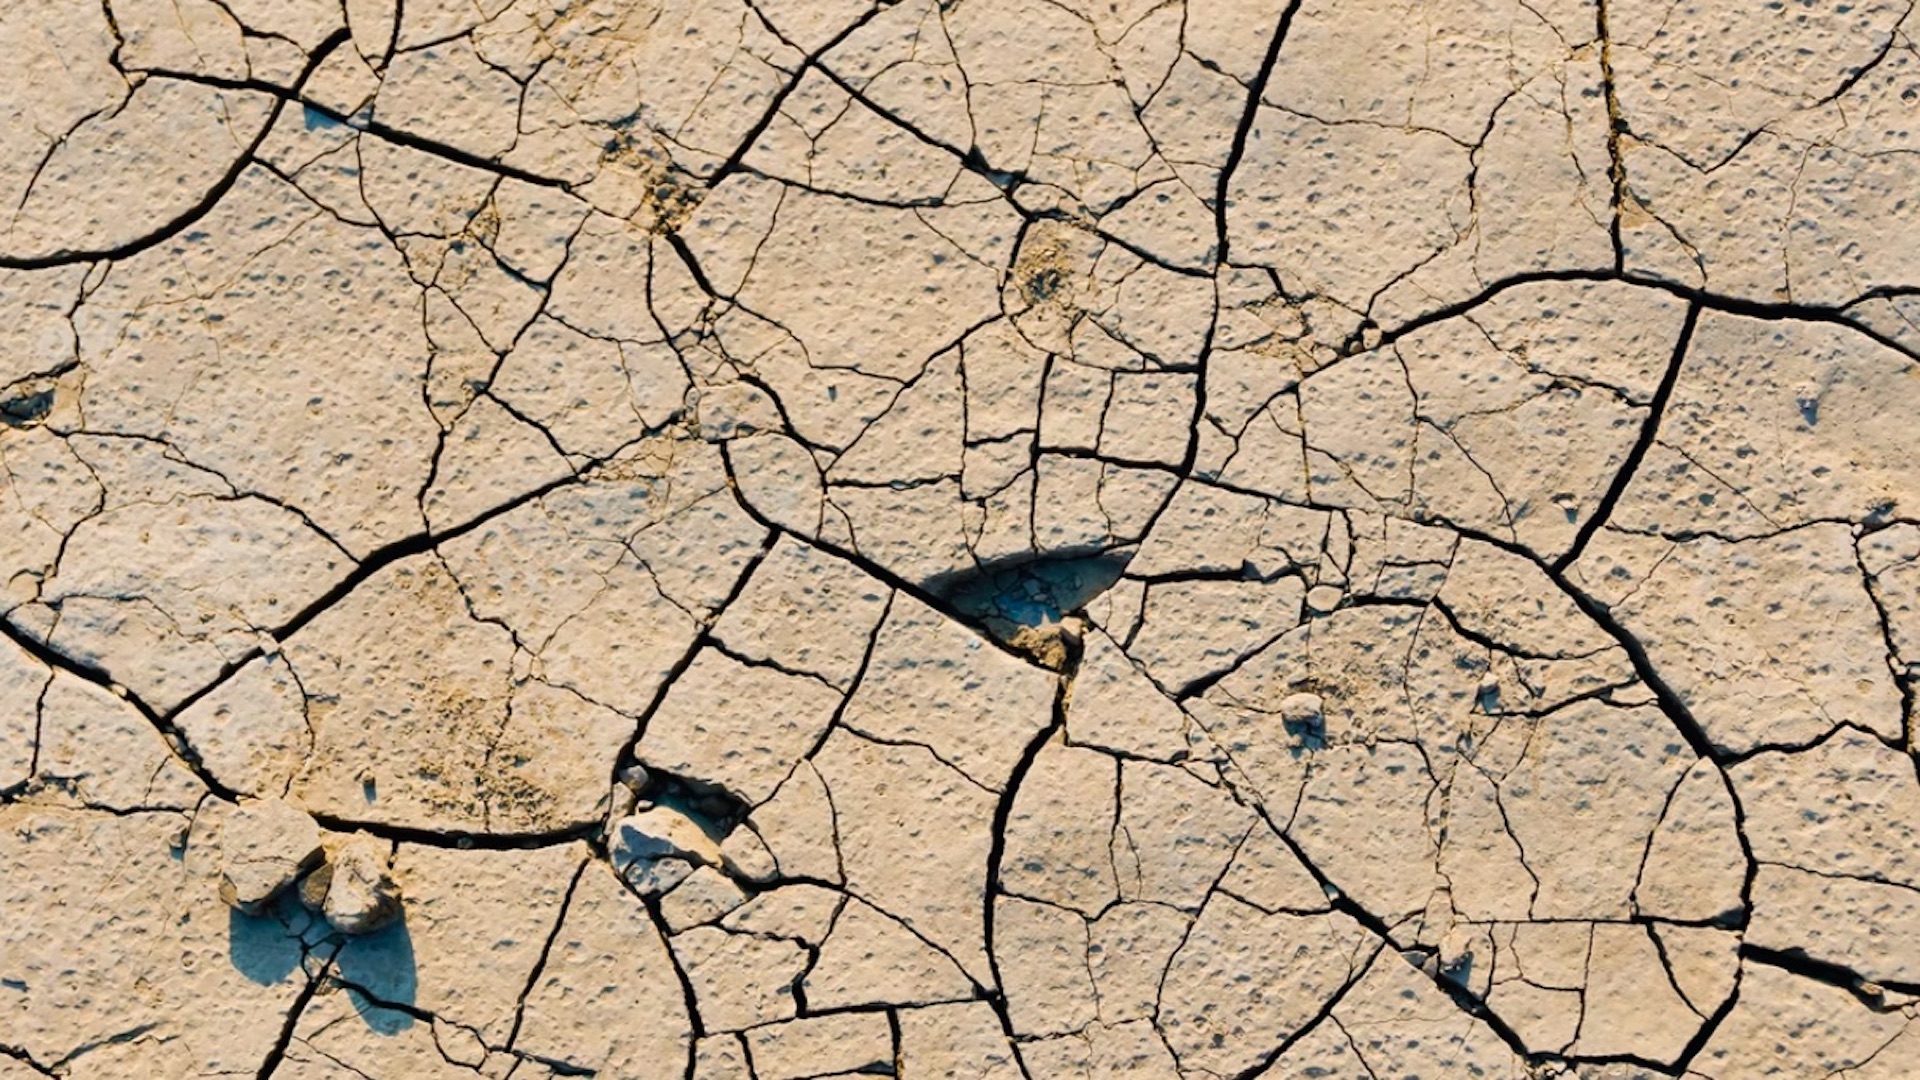 Europa experimentará sequías extremas en los próximos años. Foto de Anton Ivanchenko para Unsplash